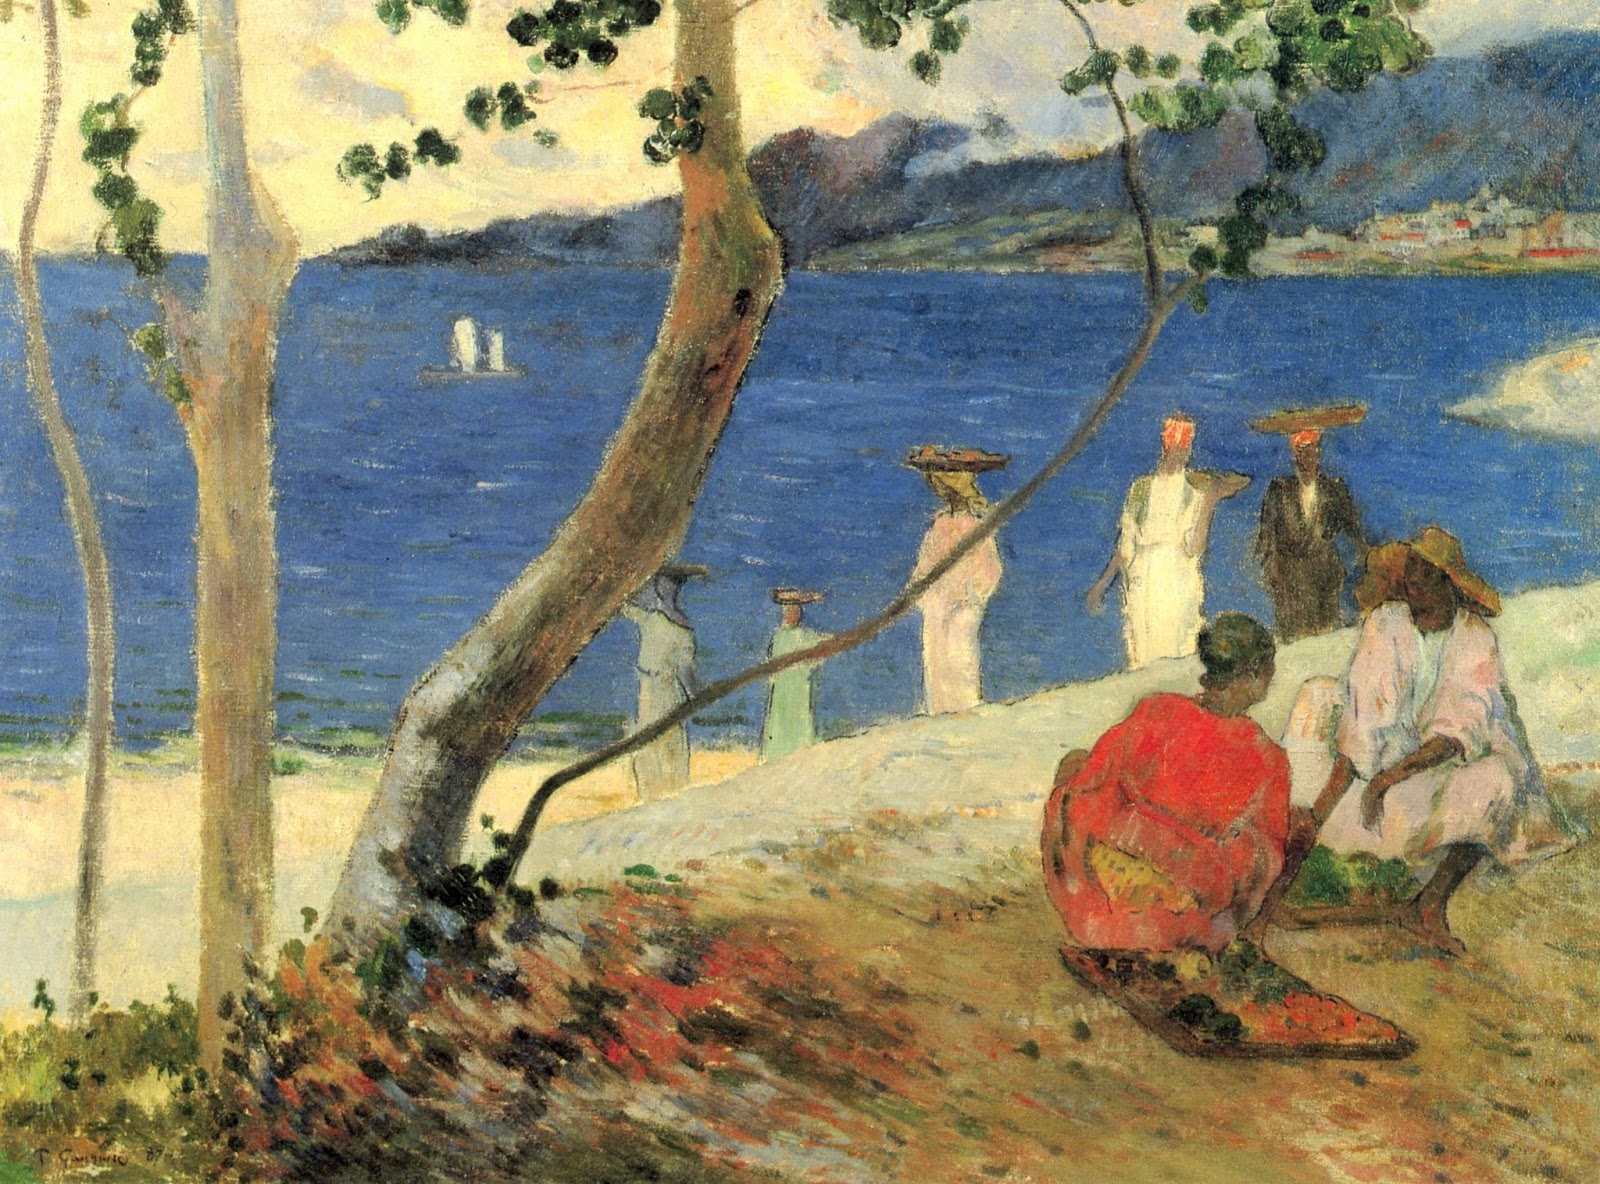 Paul+Gauguin-1848-1903 (287).jpg